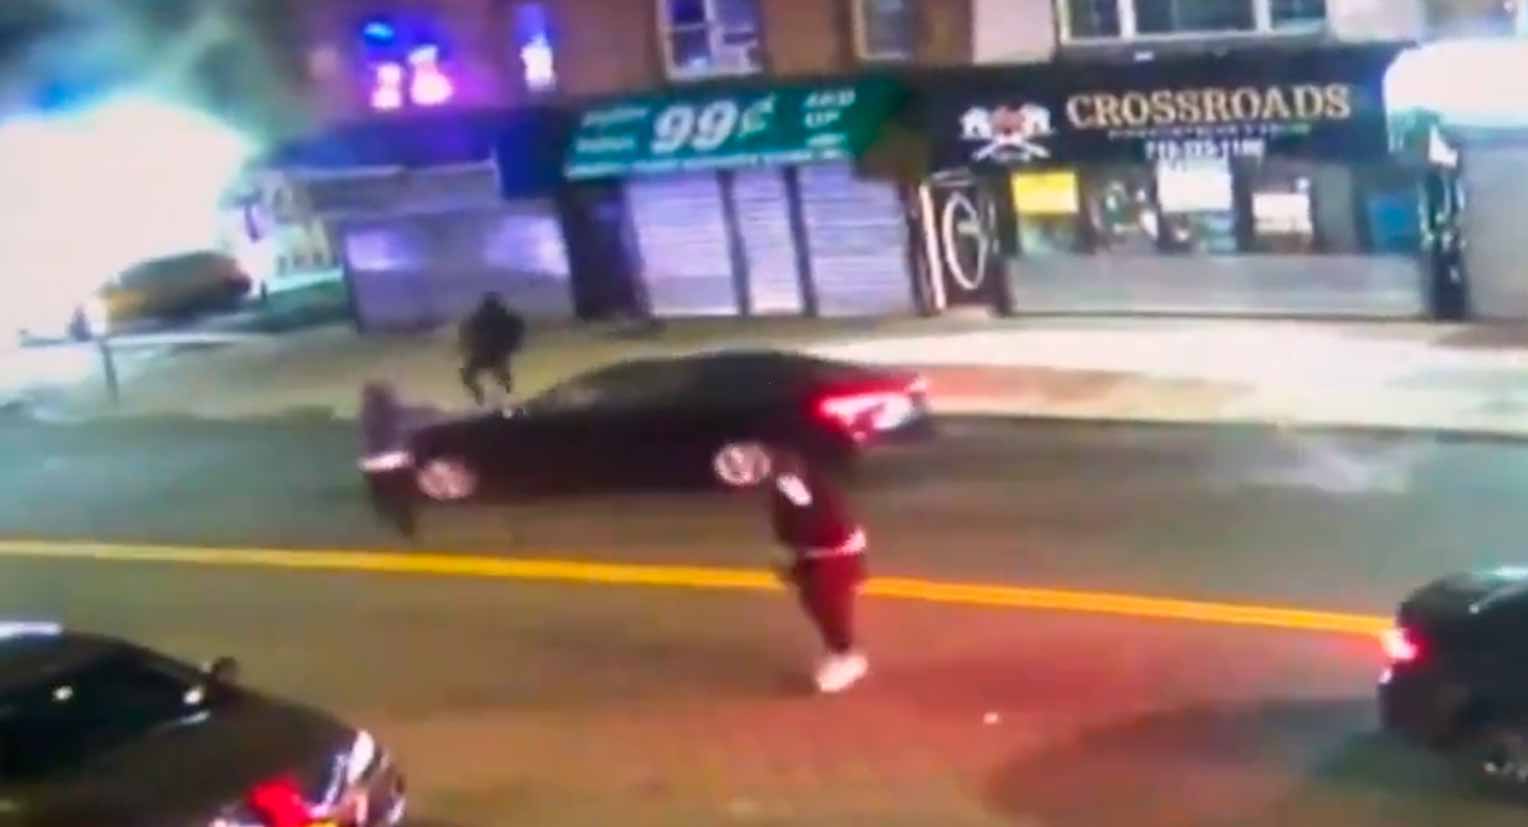 Σοκαριστικό βίντεο δείχνει ένοπλη εμπόλεμη επίθεση στη Νέα Υόρκη που οδήγησε στον θάνατο μιας 28χρονης μητέρας. Φωτογραφία και βίντεο: Αναπαραγωγή από Twitter @ShootInUSA